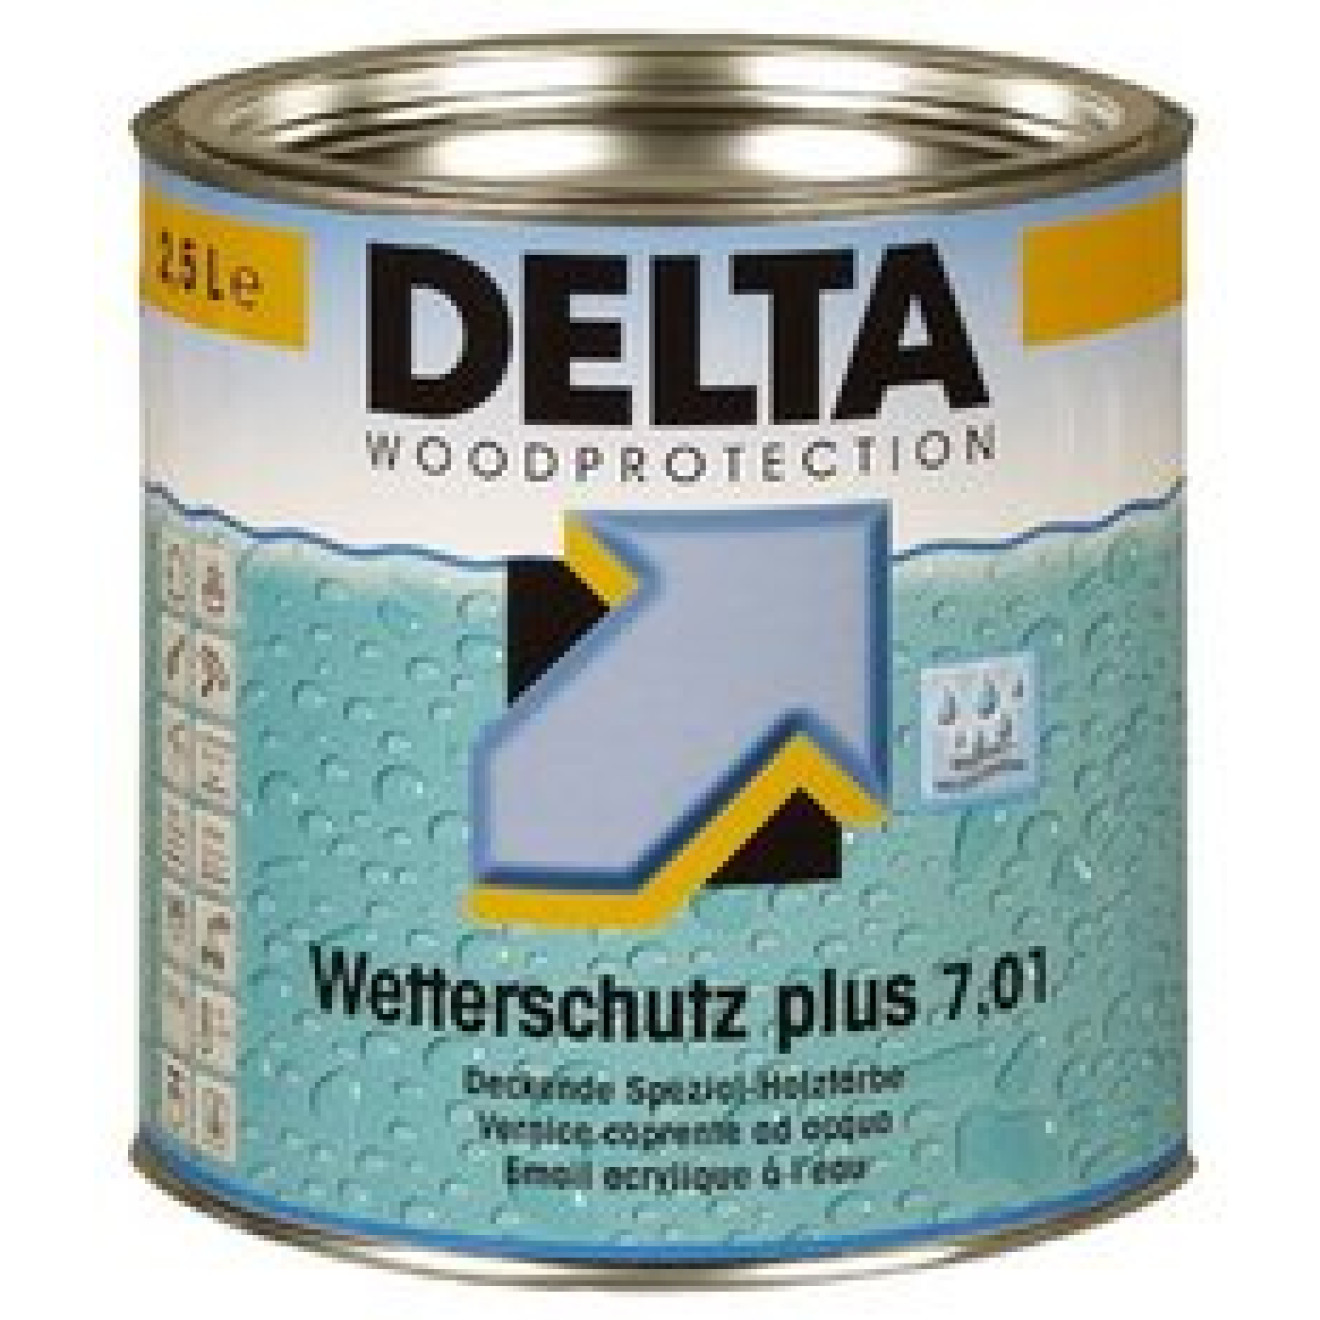 Delta Wetterschutz plus 7.01